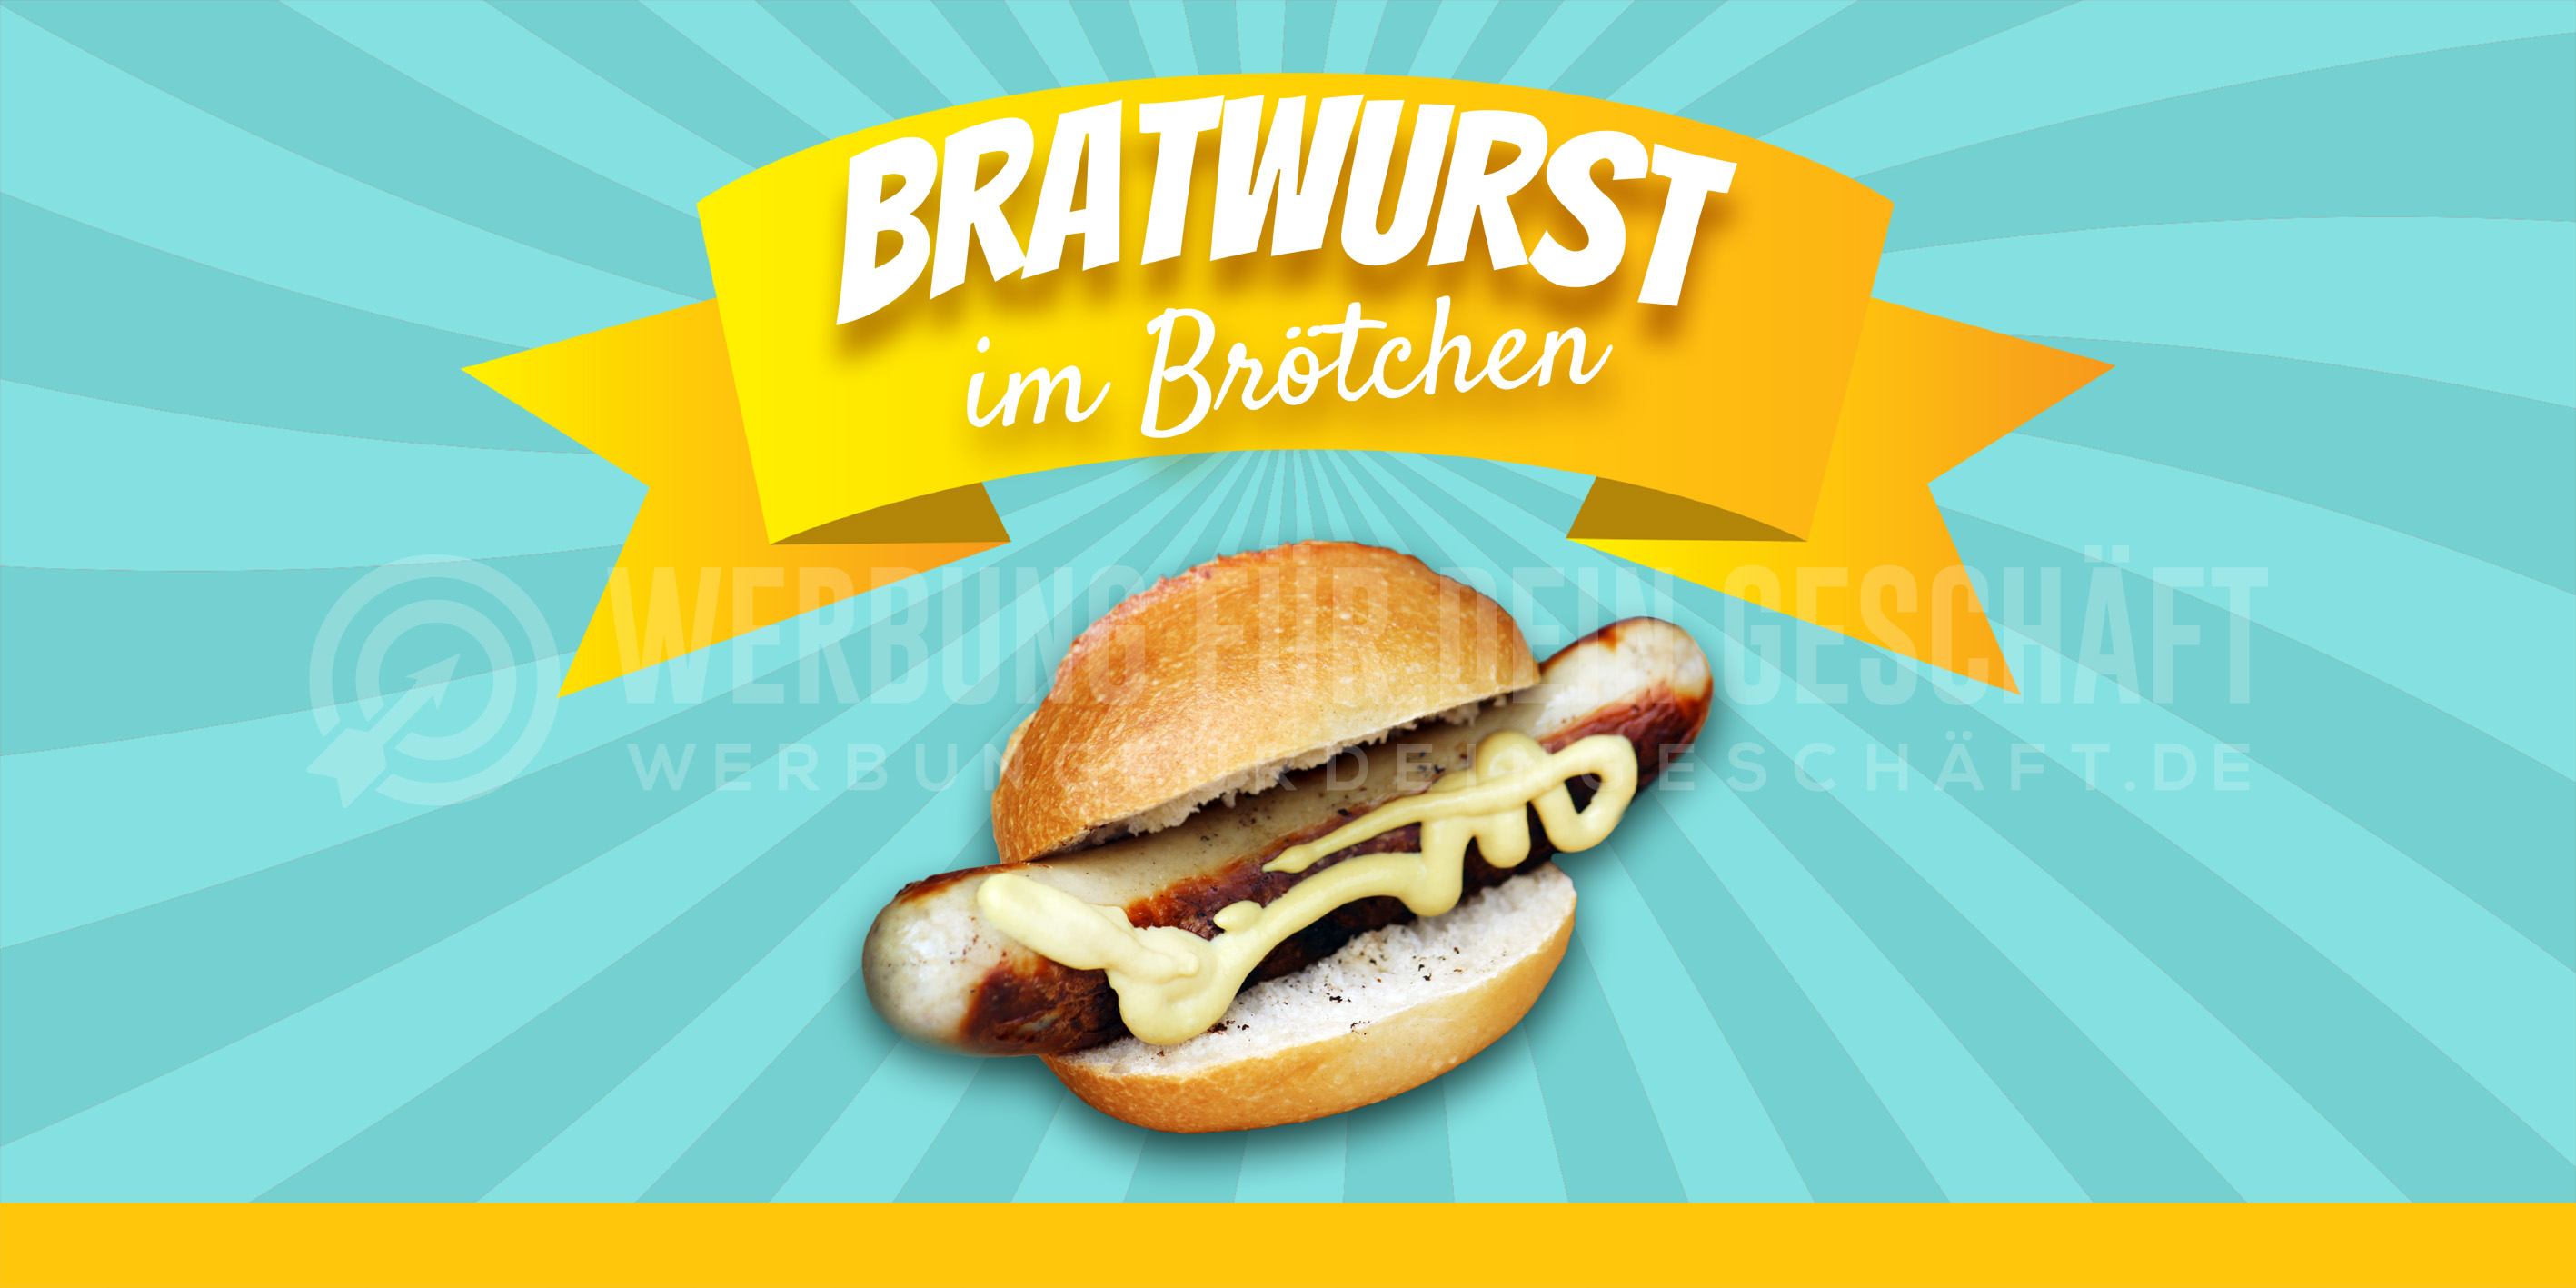 2:1 | Bratwurst Plakat | Werbetafel Bratwurst im Brötchen | 2 zu 1 Format